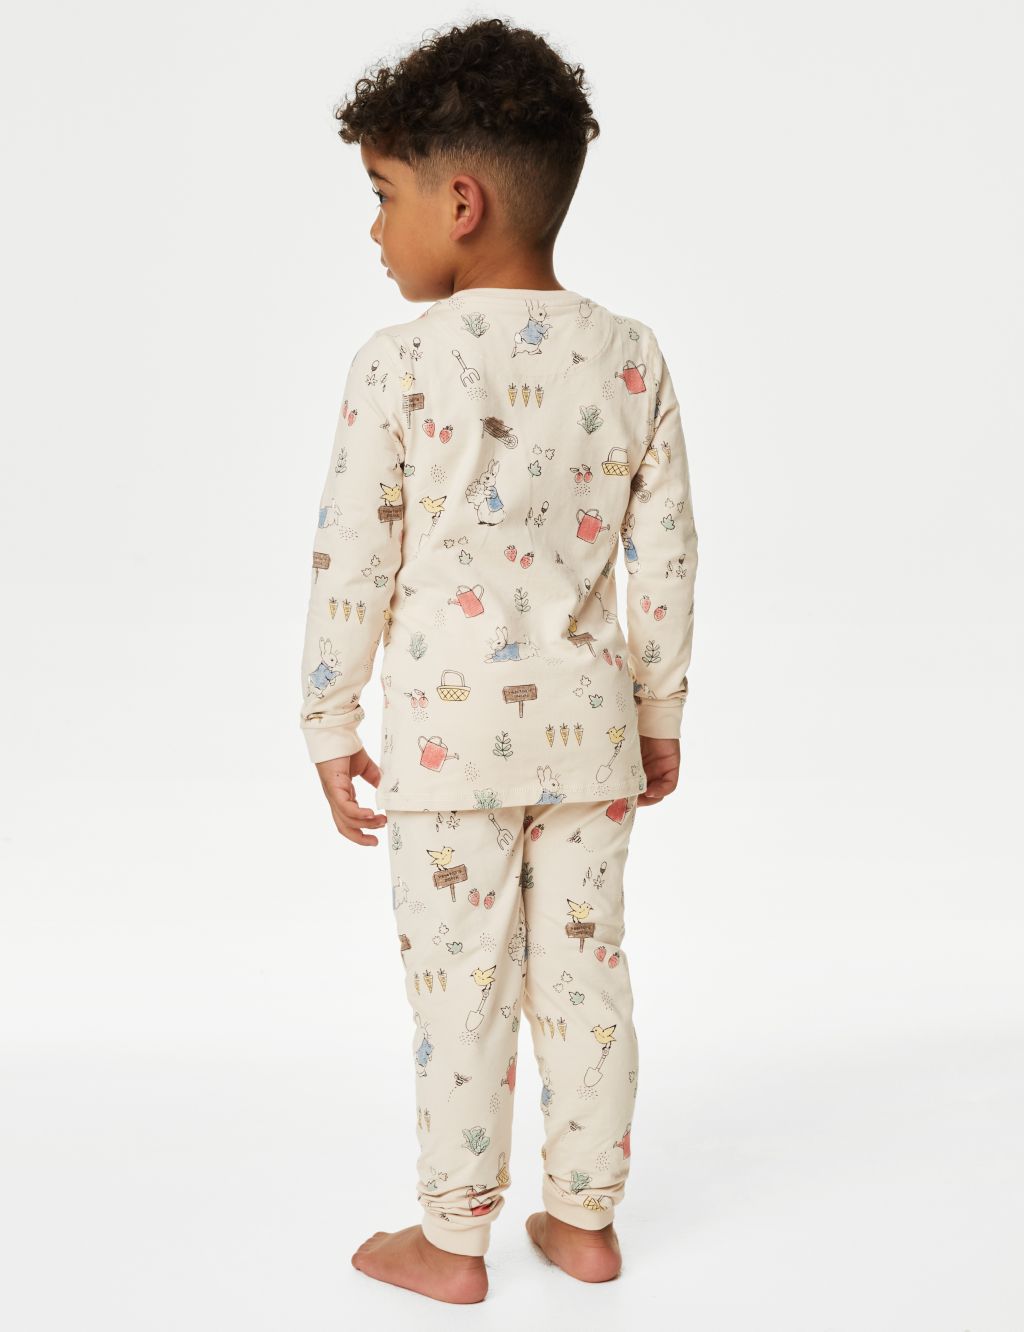 Peter Rabbit™ Pyjamas (1-6 Yrs) image 3